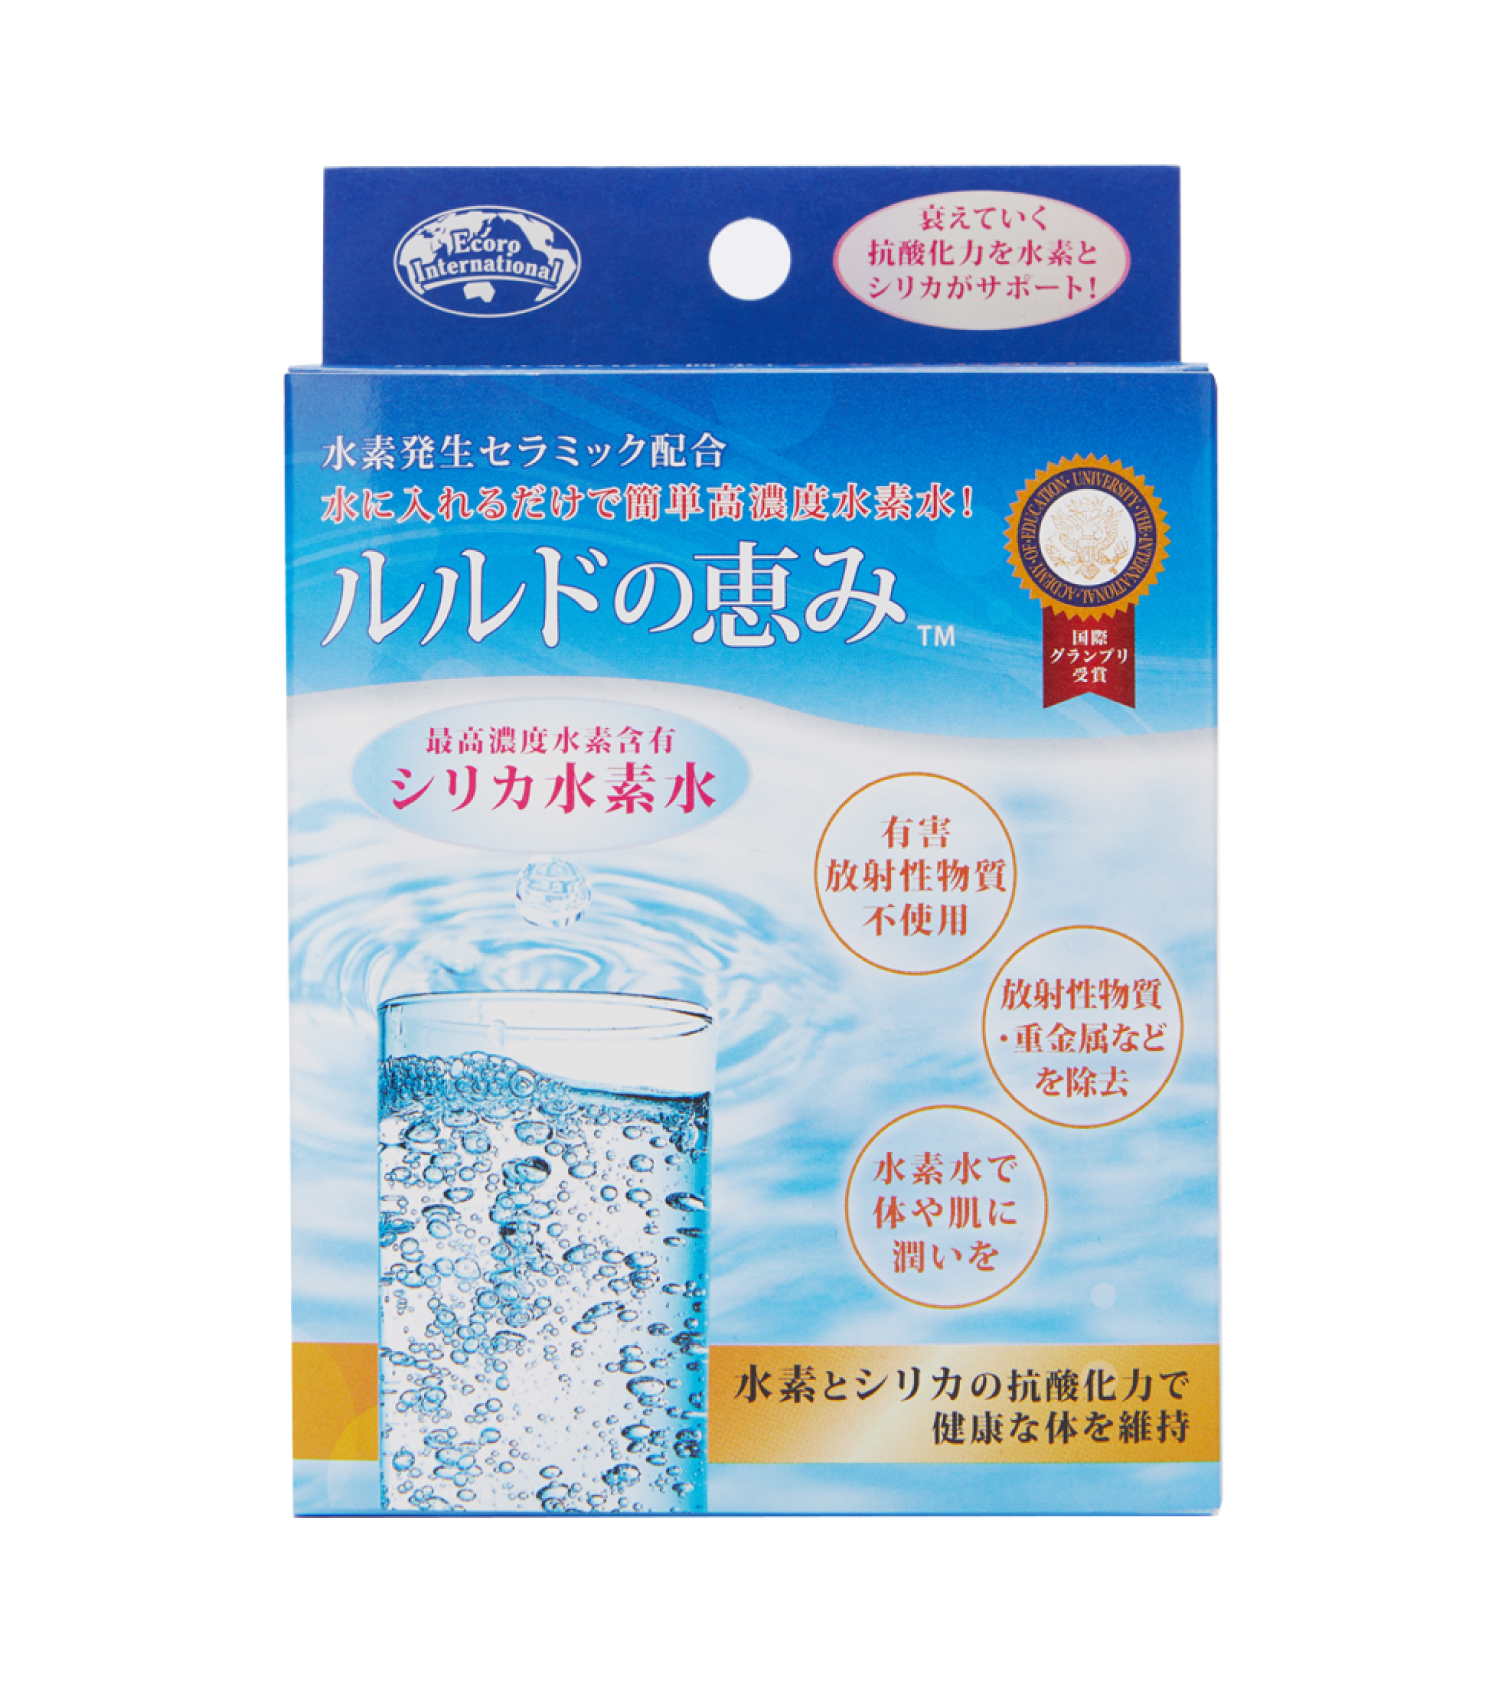 【楽天市場】 高濃度シリカ水素水 ルルドの恵み : エコロショップ